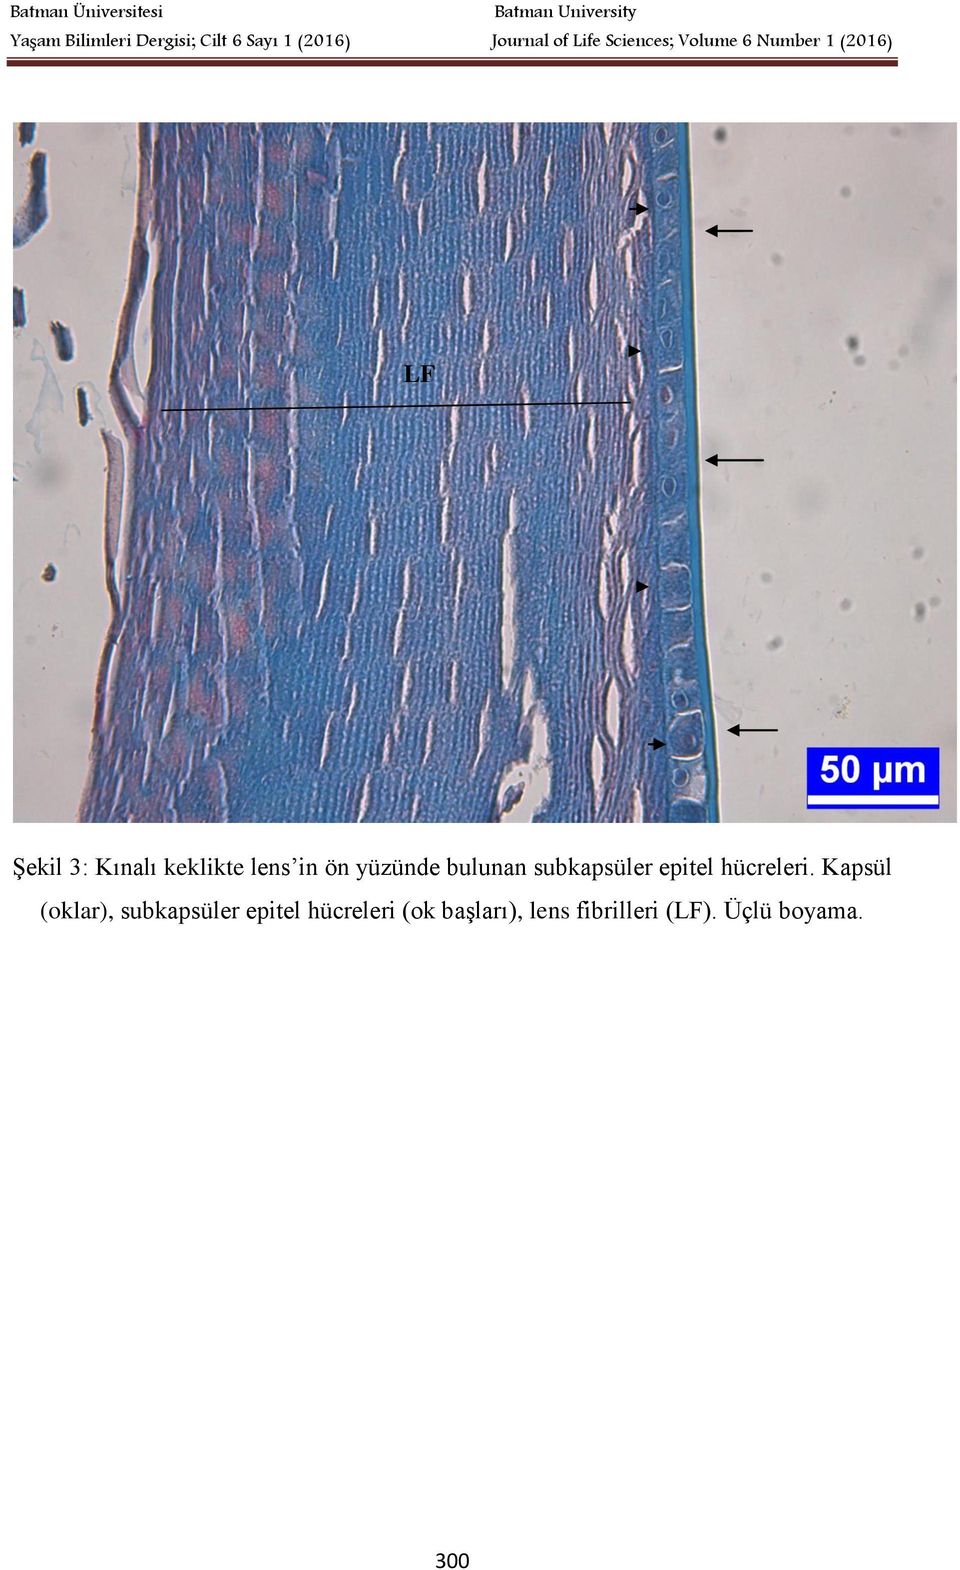 Kapsül (oklar), subkapsüler epitel hücreleri